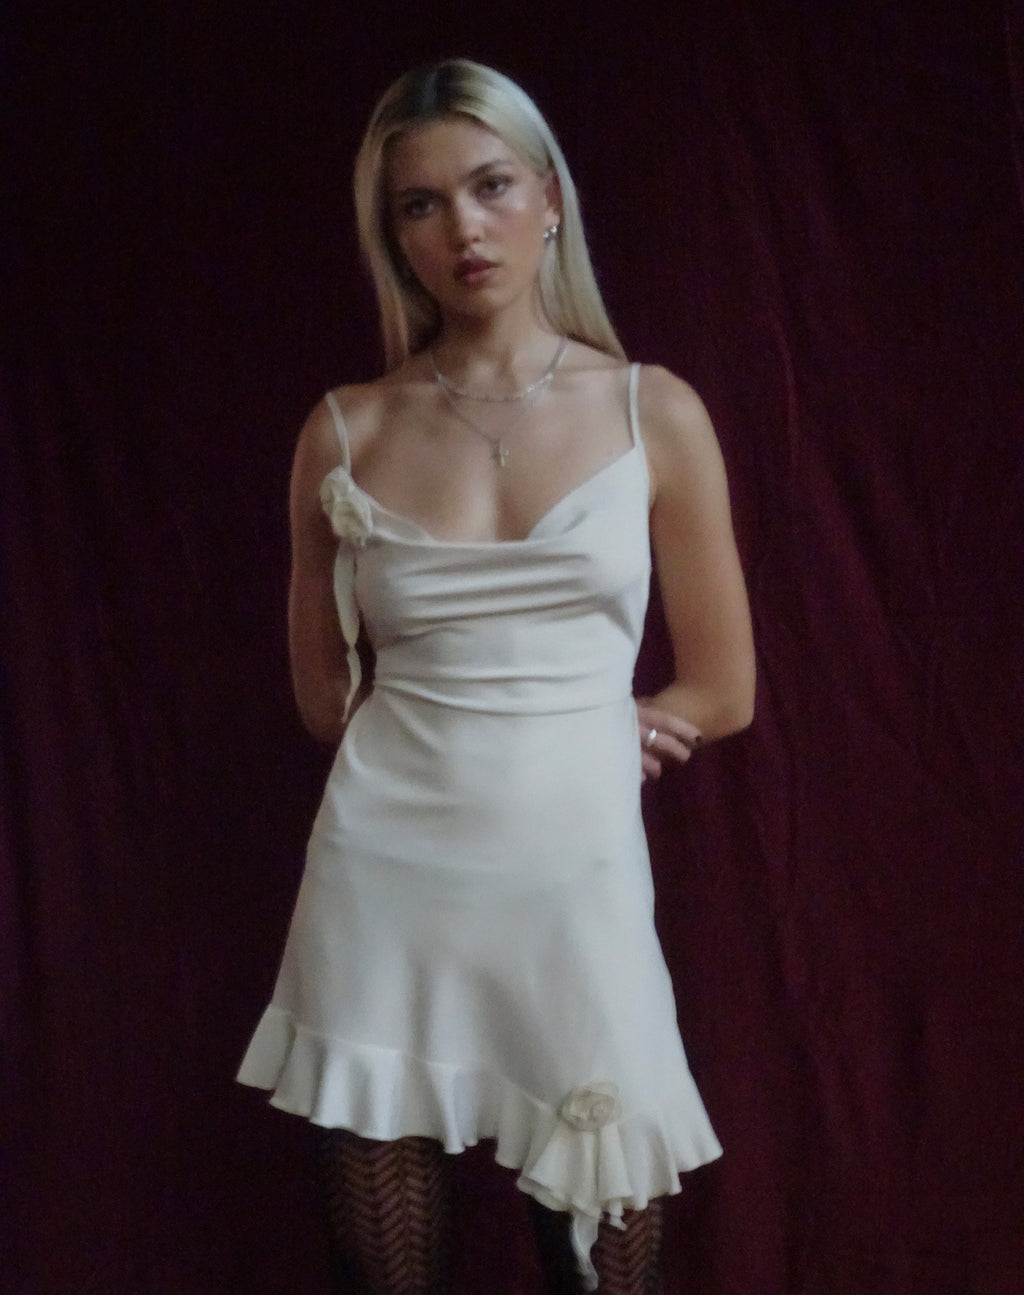 Litera Ruffle Rosette Mini Dress in Cream